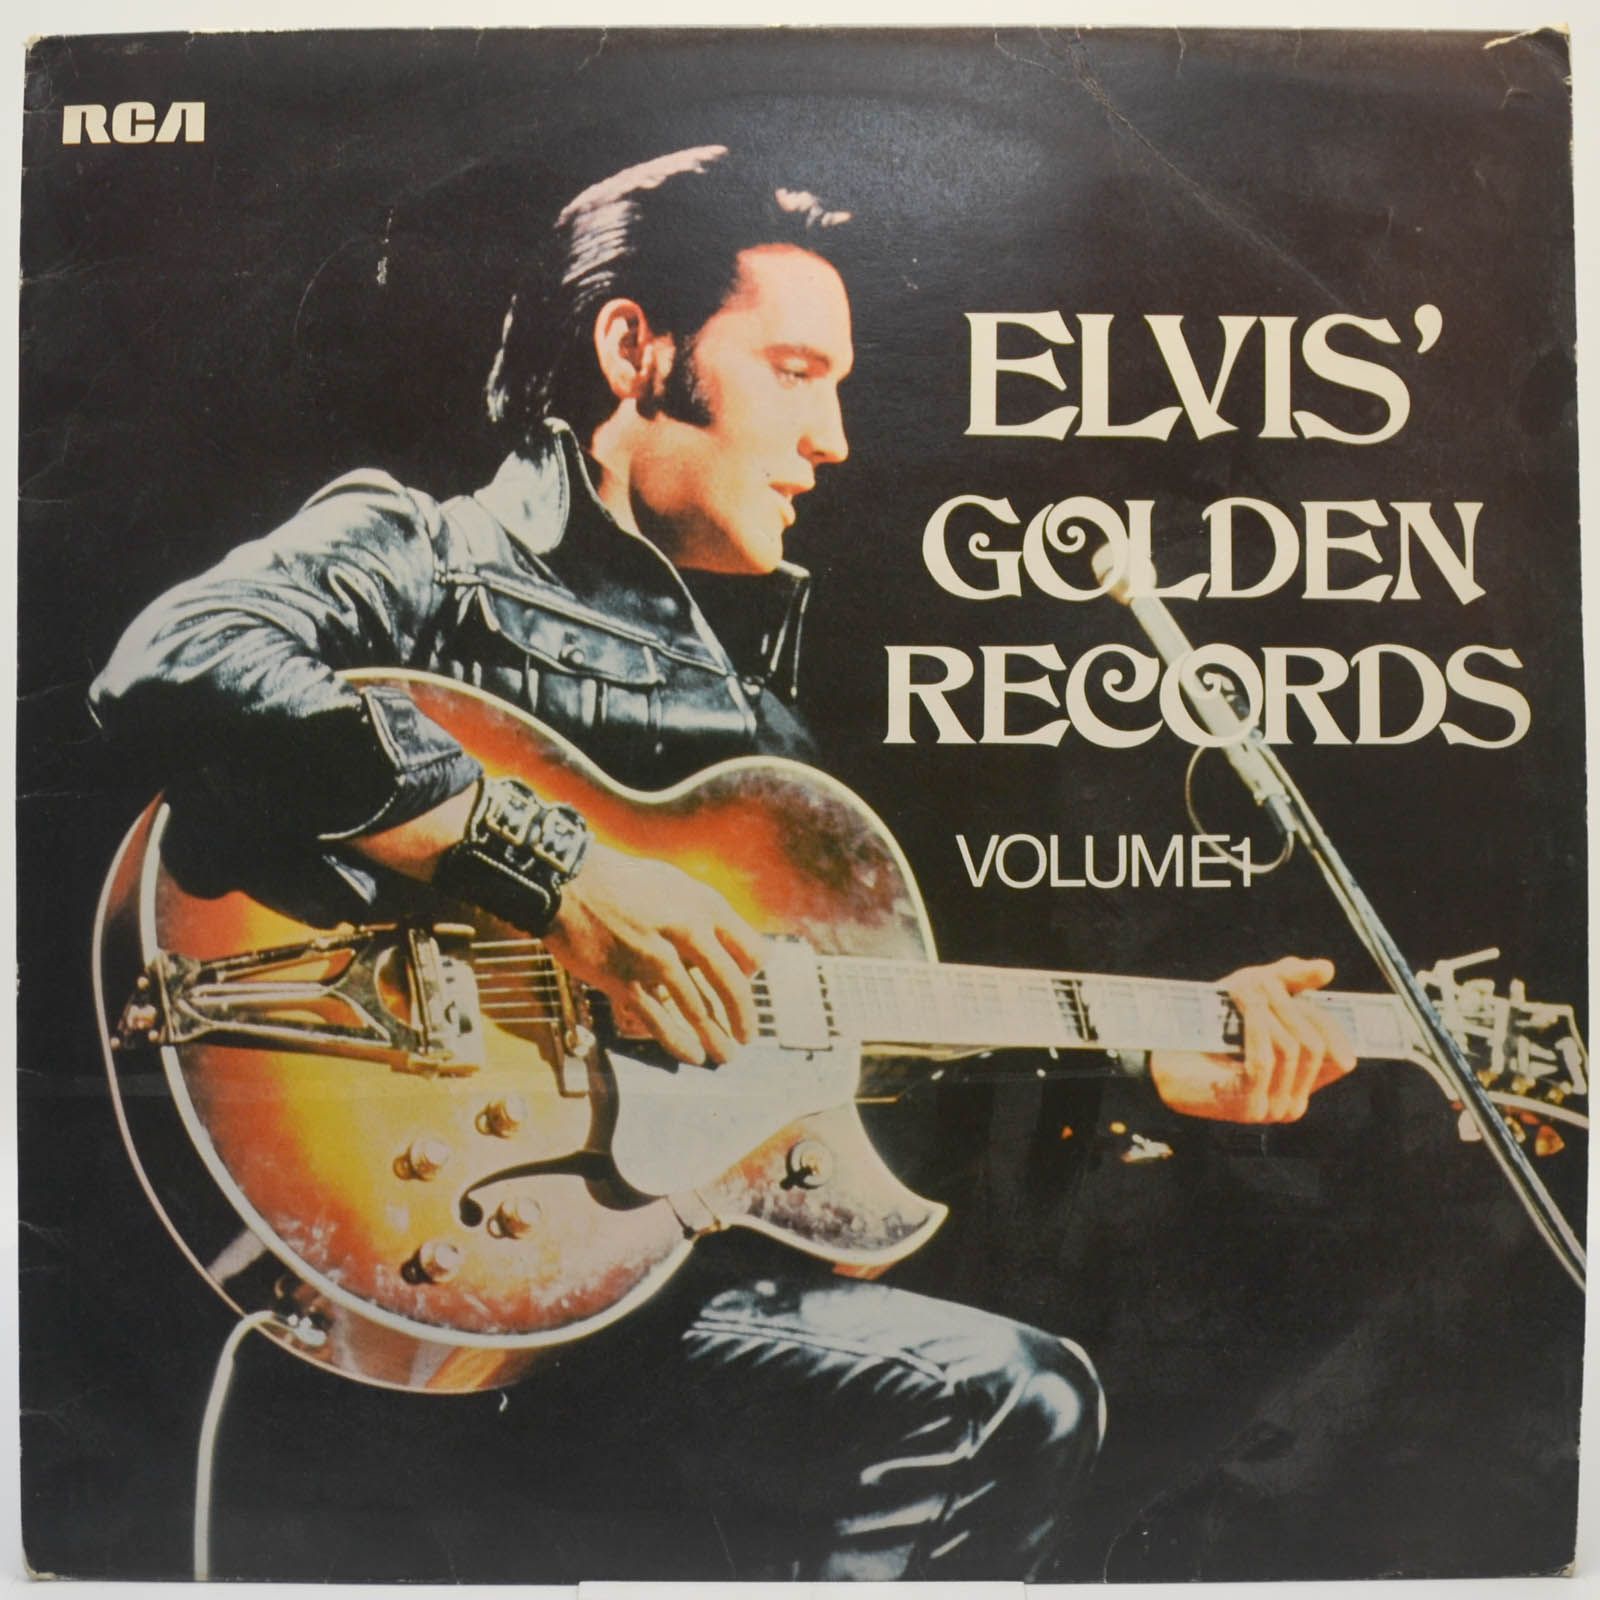 Elvis Presley — Elvis' Golden Records Volume 1 (UK), 1970